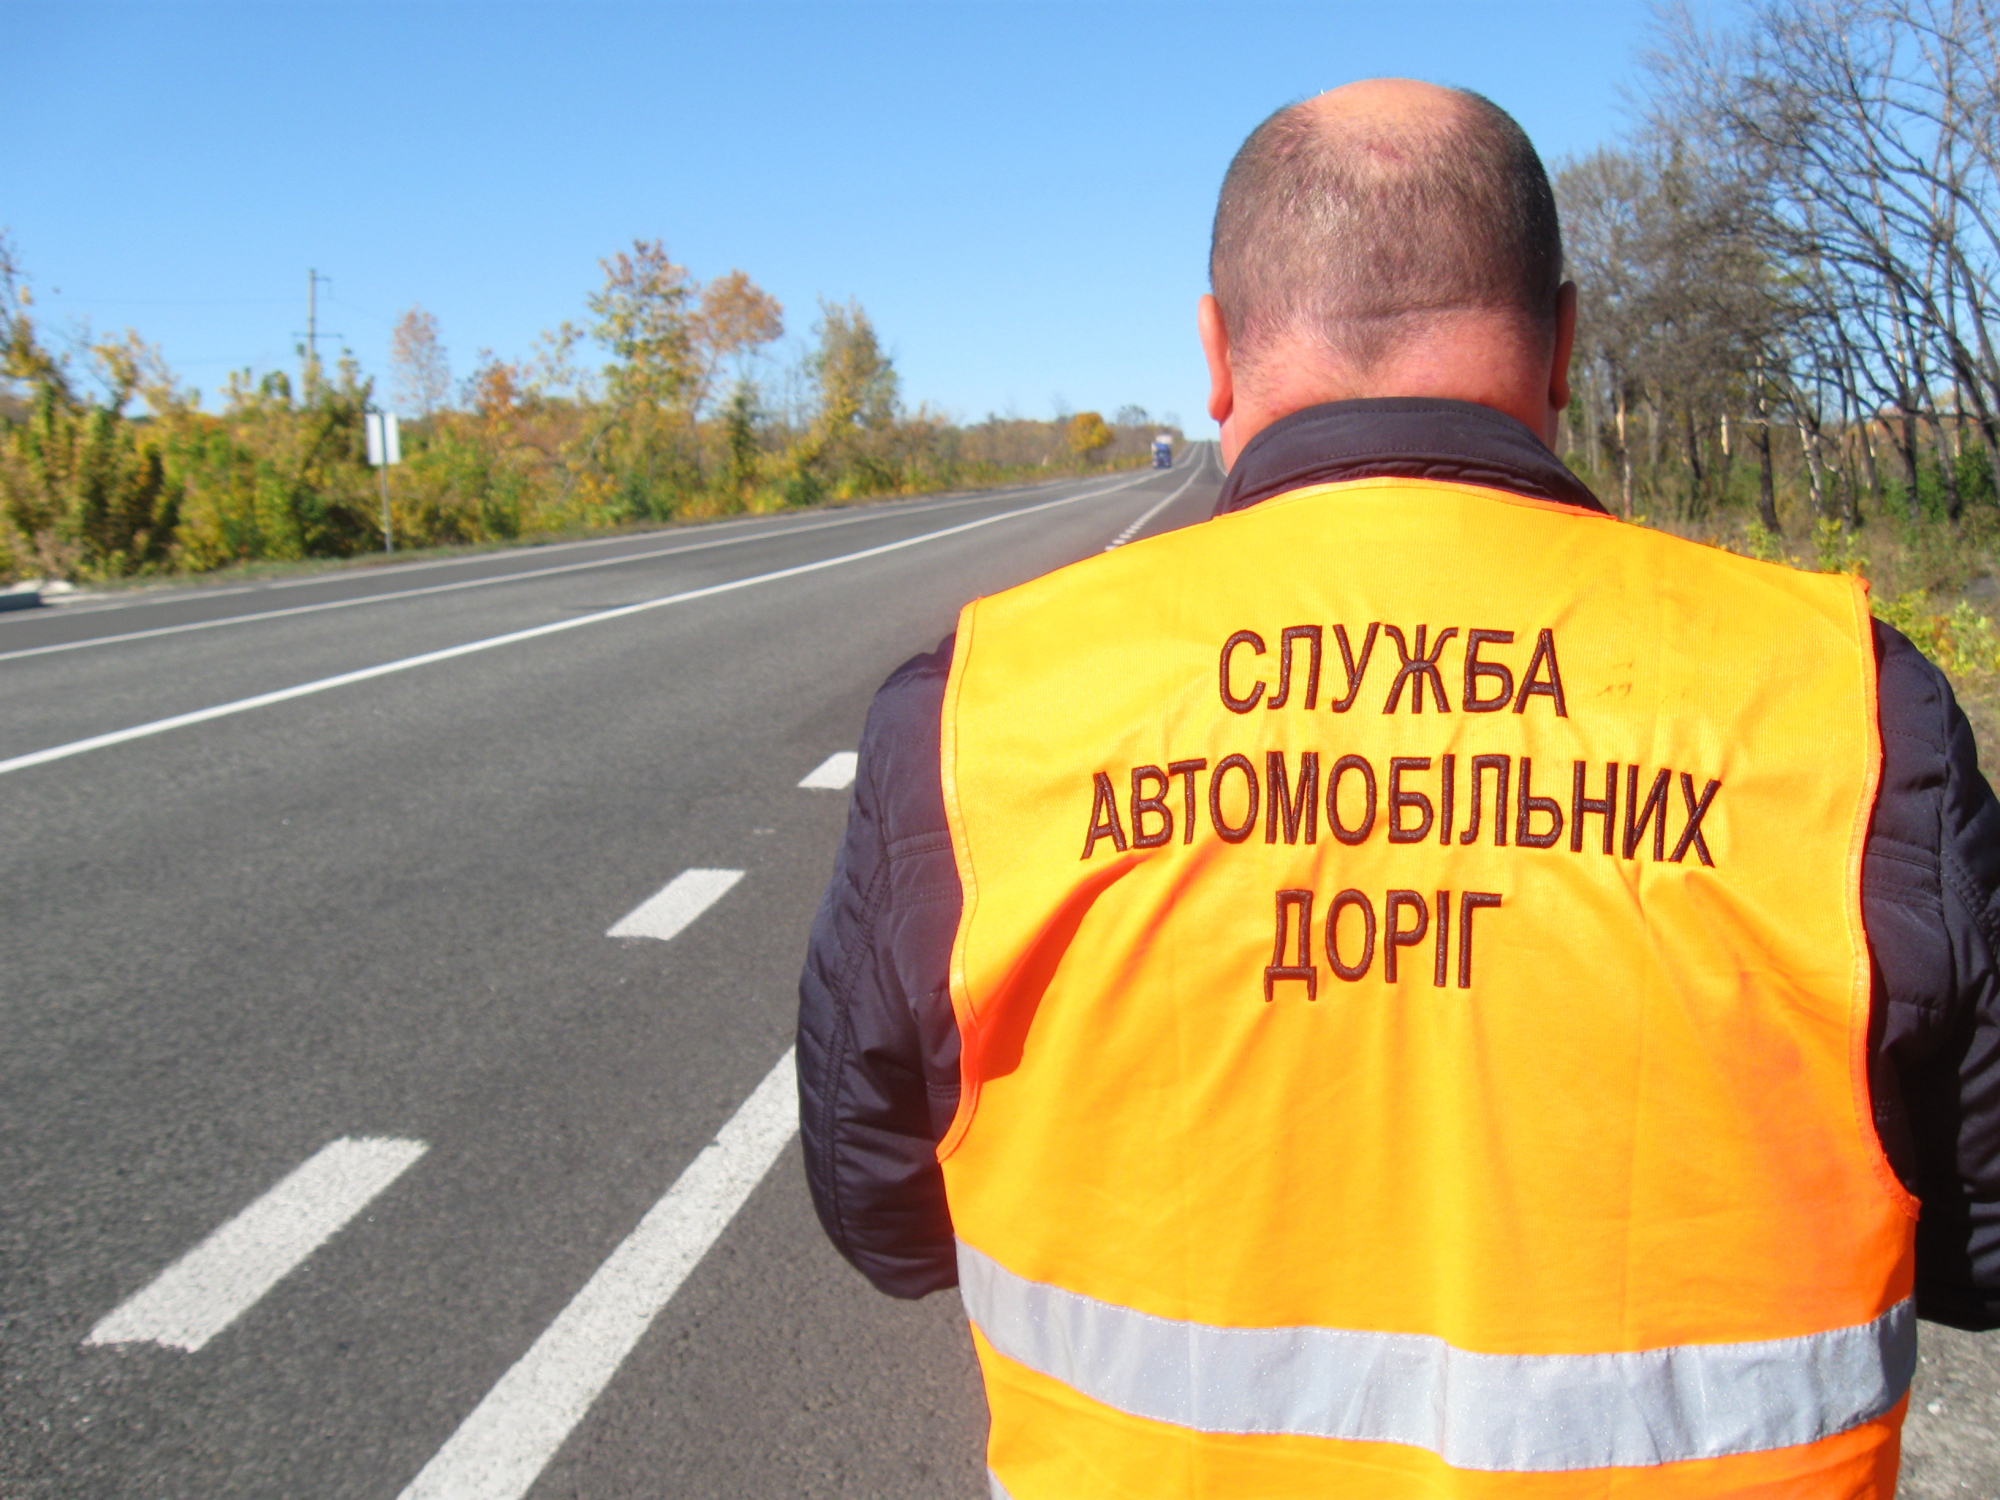 Начальник областного автодора на Донетчине сбежал от журналистов